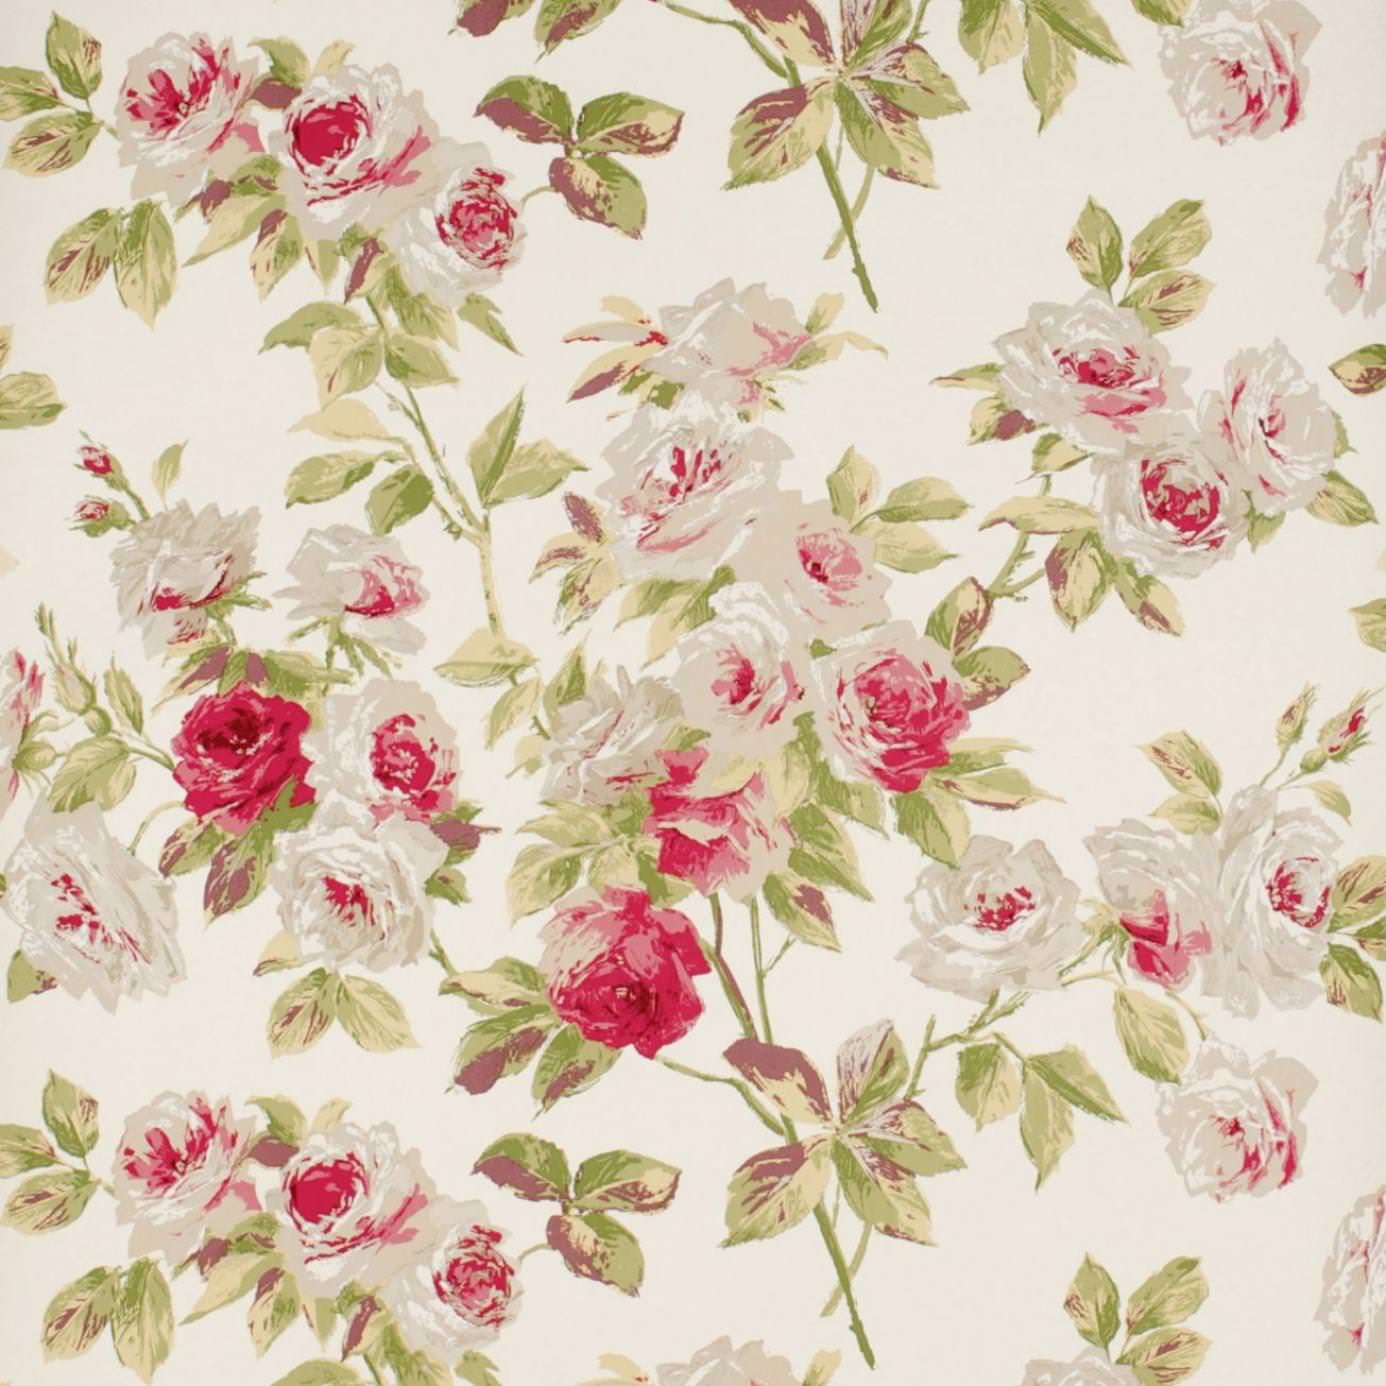 Vintage Floral Background Wallpaper